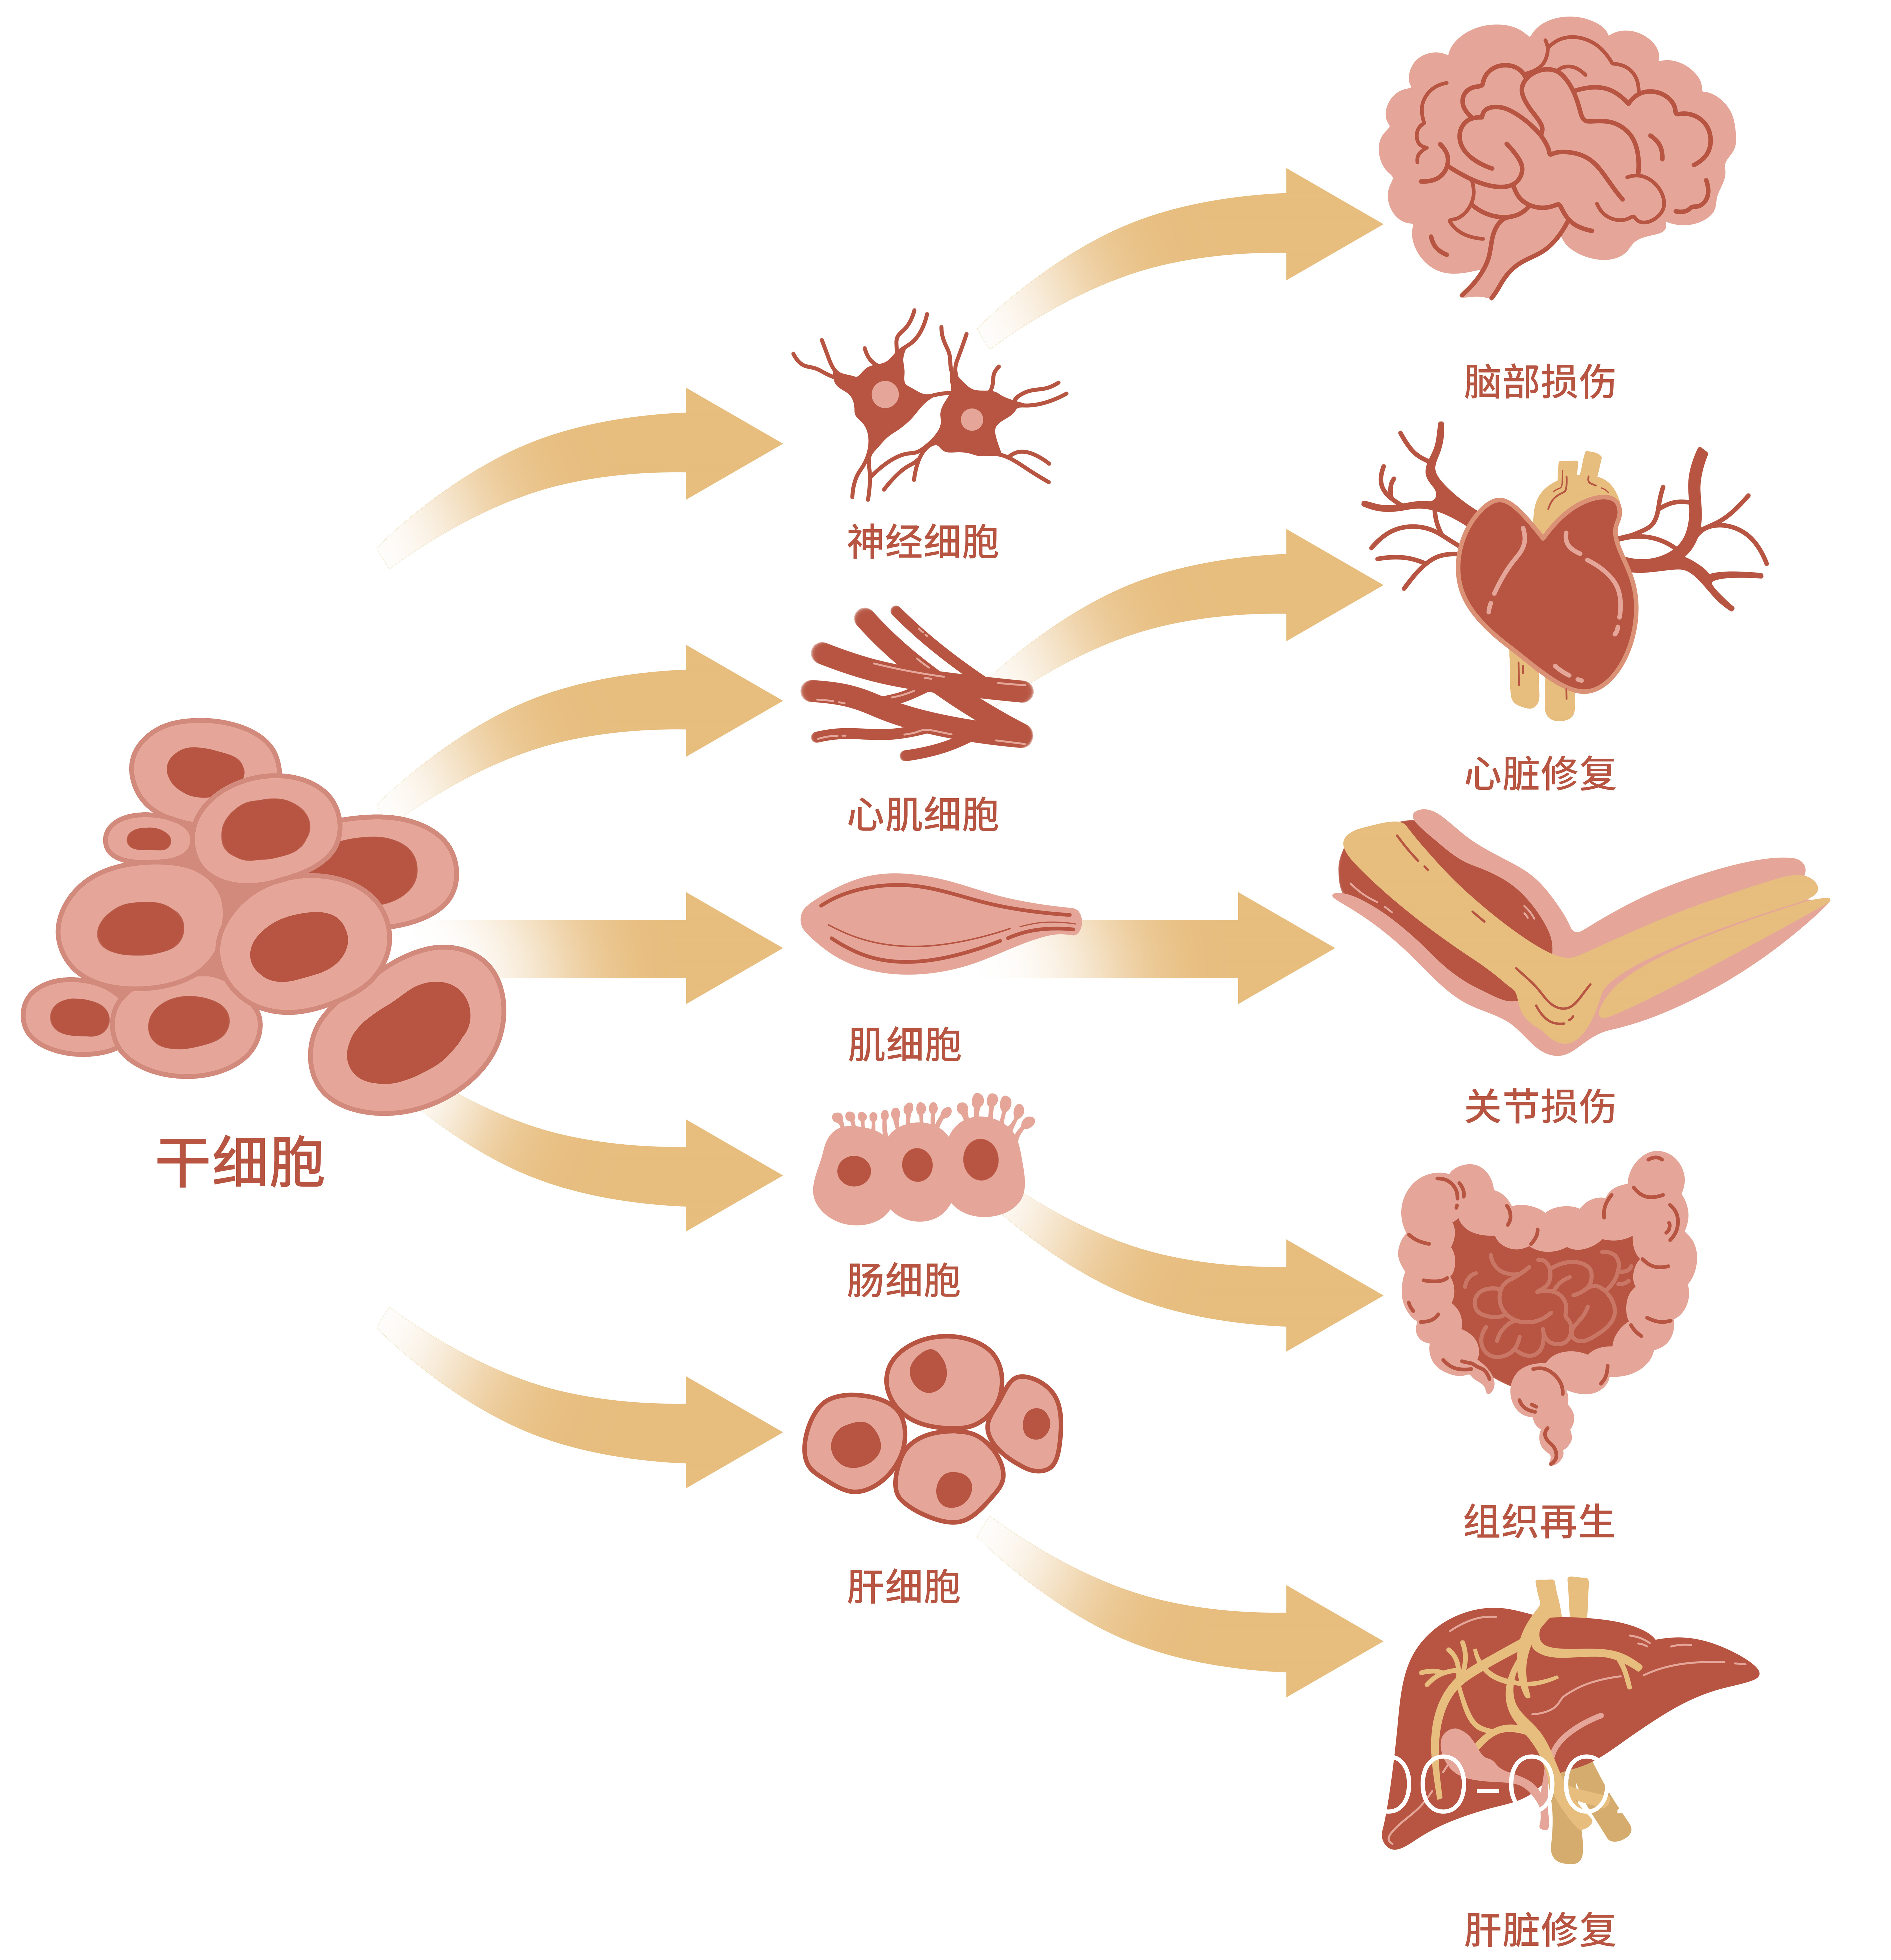 中国干细胞公司排名生物干细胞